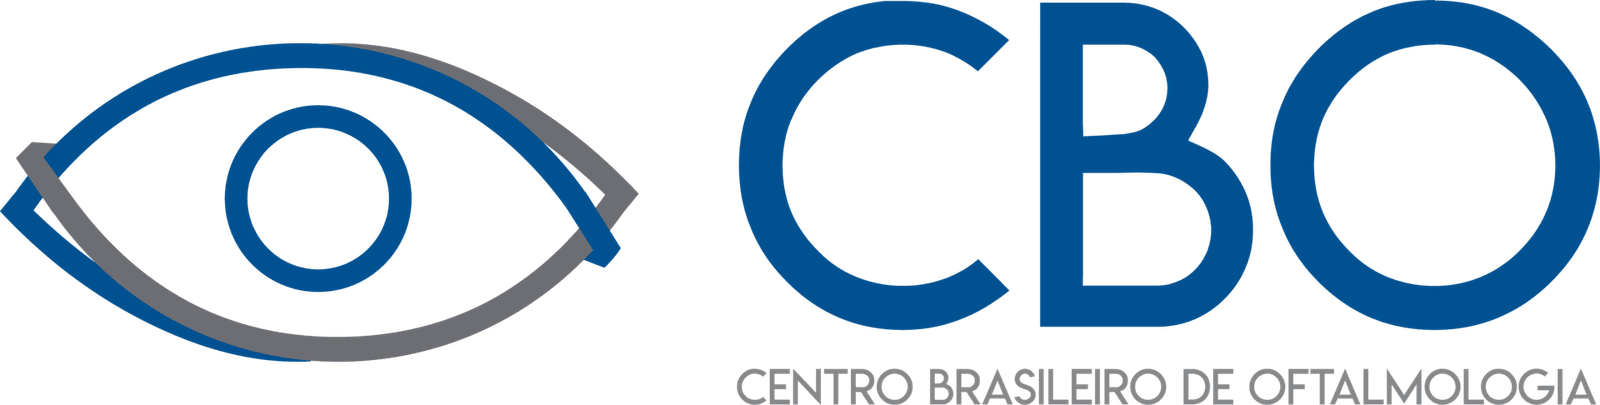 Centro Brasileiro de Oftalmologia - CBO - Logo